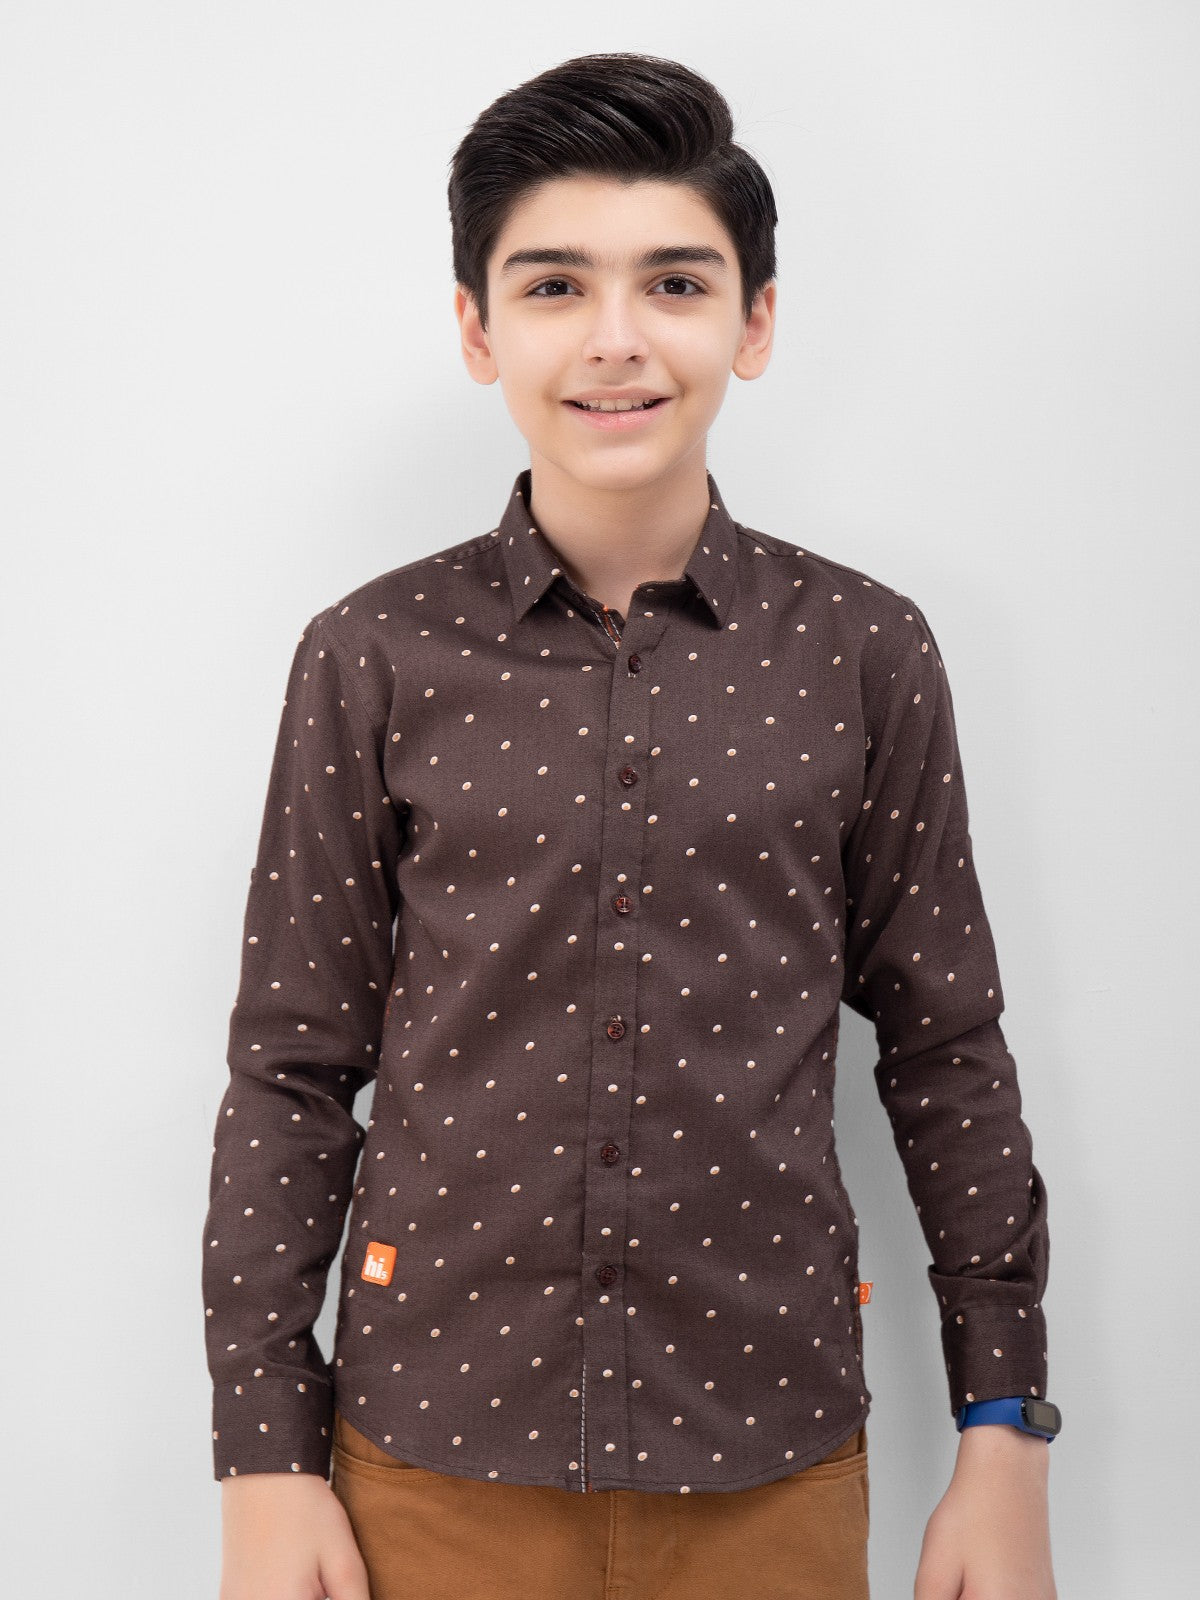 Boy's Dark Brown Shirt - EBTS22-27387